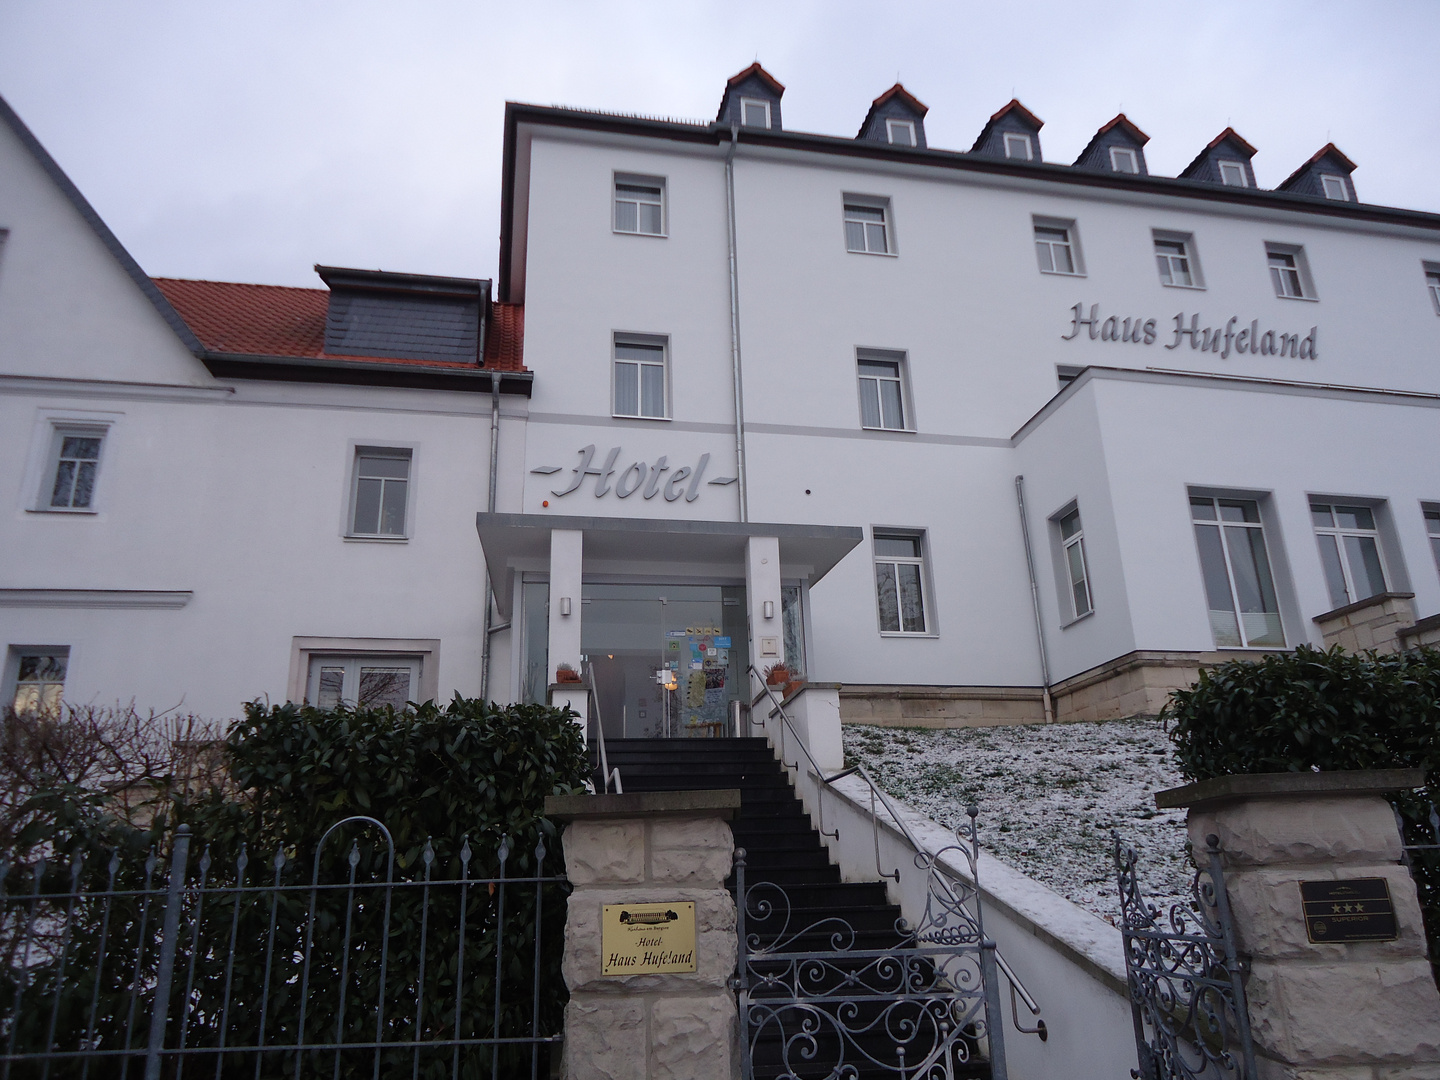 Hotel "Haus Hufeland"